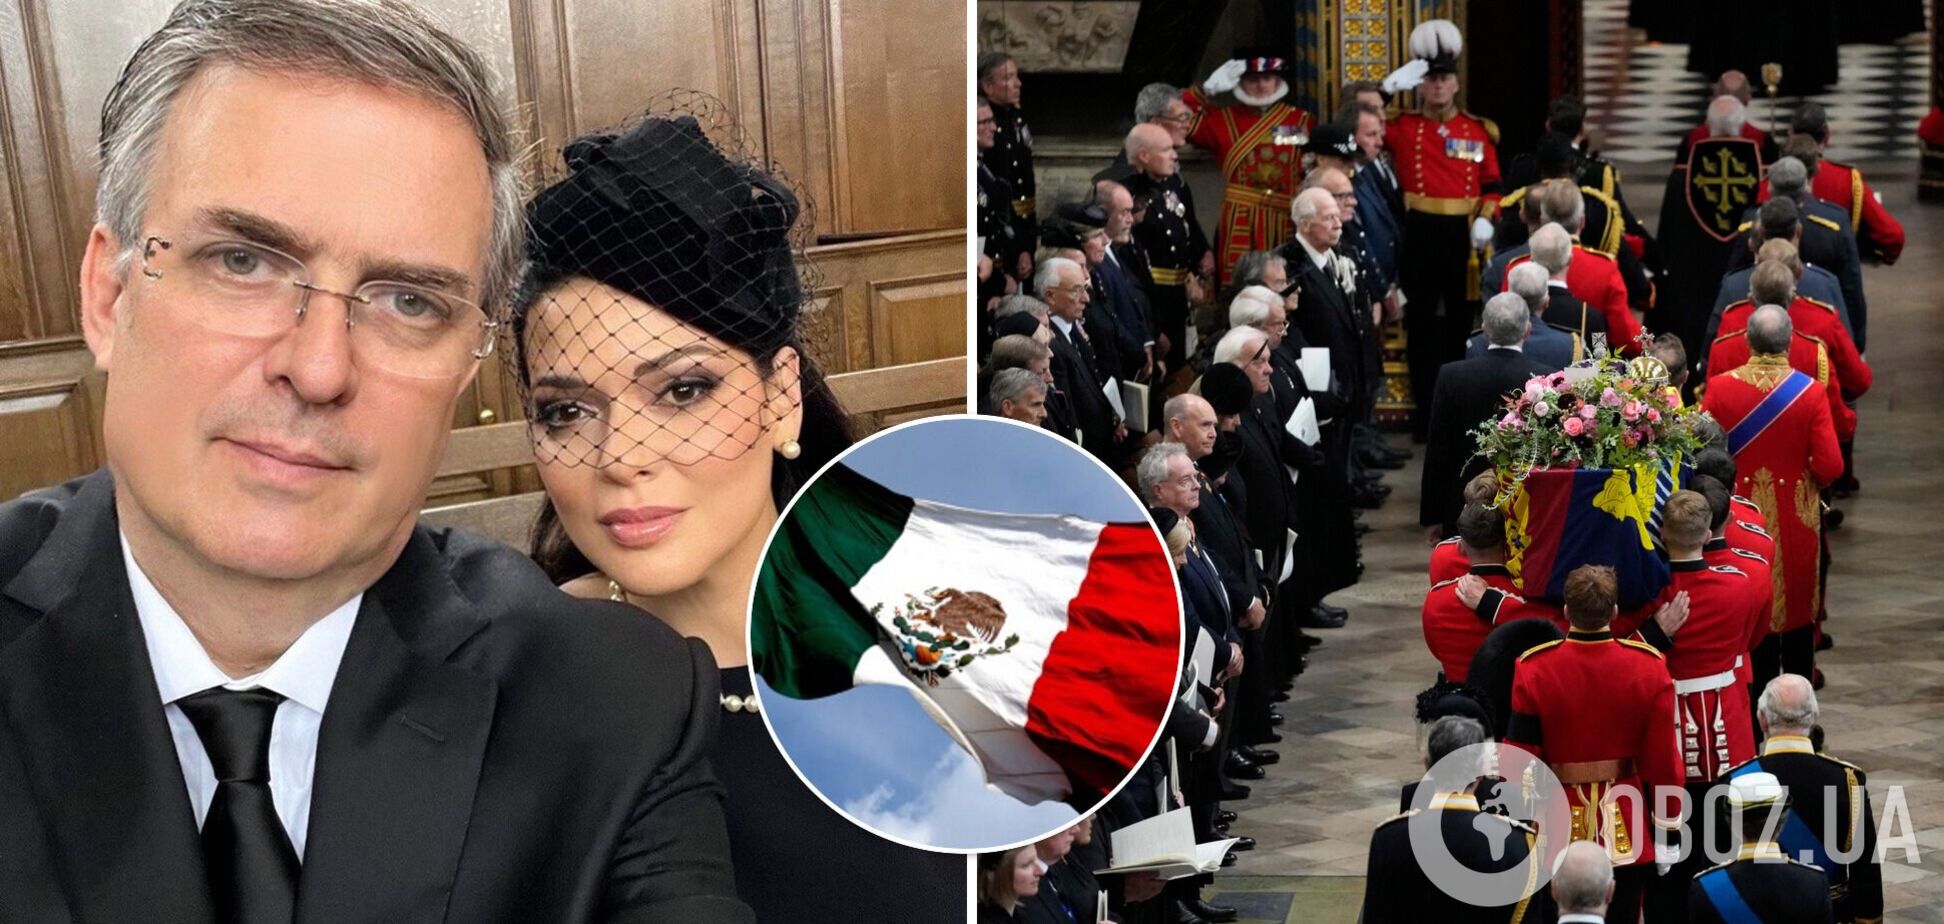 Мексиканського політика захейтили через селфі з дружиною на похороні Єлизавети ІІ. Фото, яке спричинило скандал